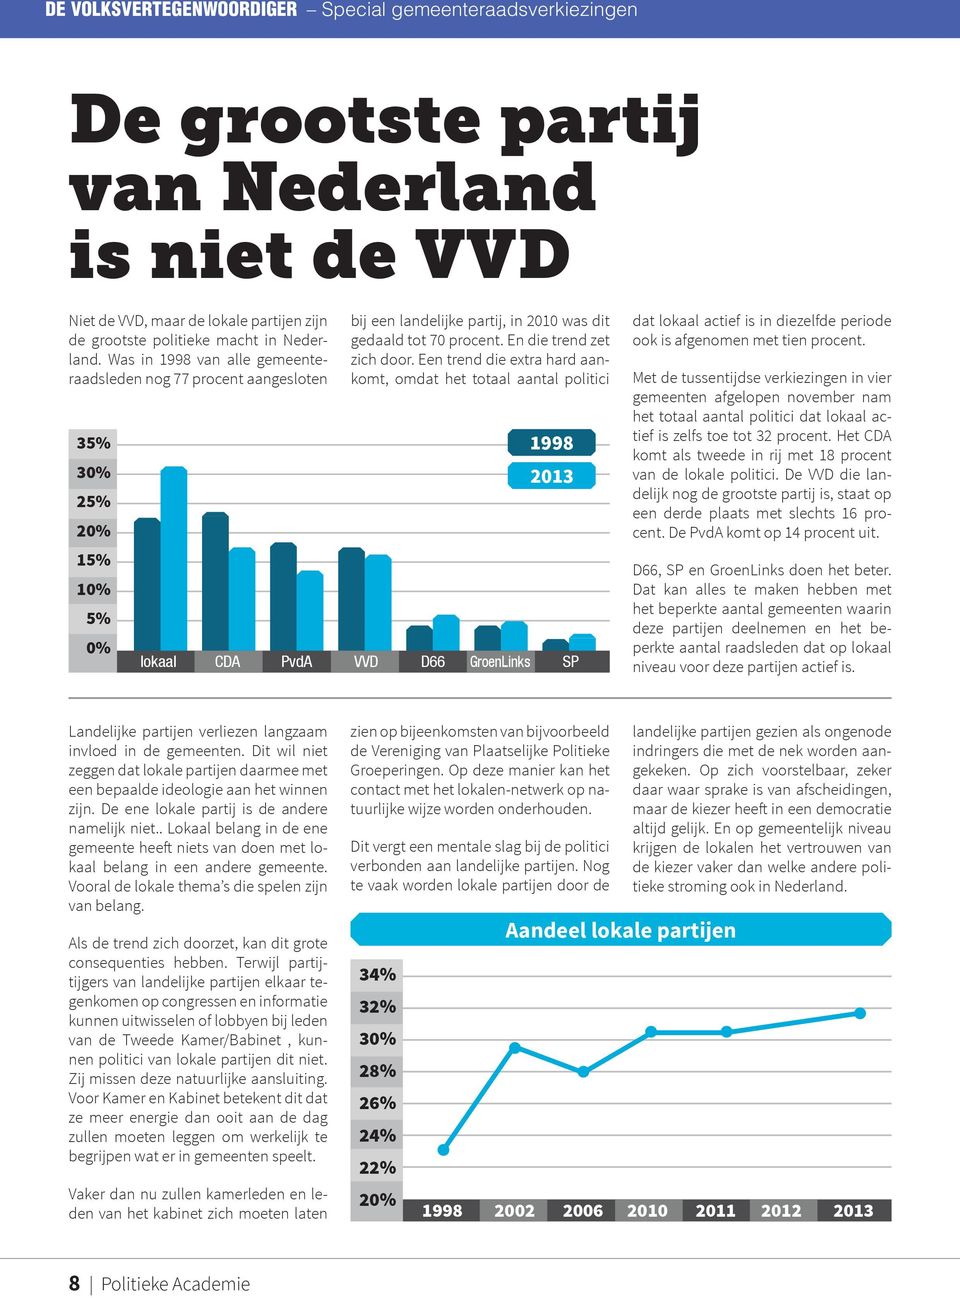 Een trend die extra hard aankomt, omdat het totaal aantal politici 35% 30% 1998 2013 25% 20% 15% 10% 5% 0% lokaal CDA PvdA VVD D66 GroenLinks SP dat lokaal actief is in diezelfde periode ook is